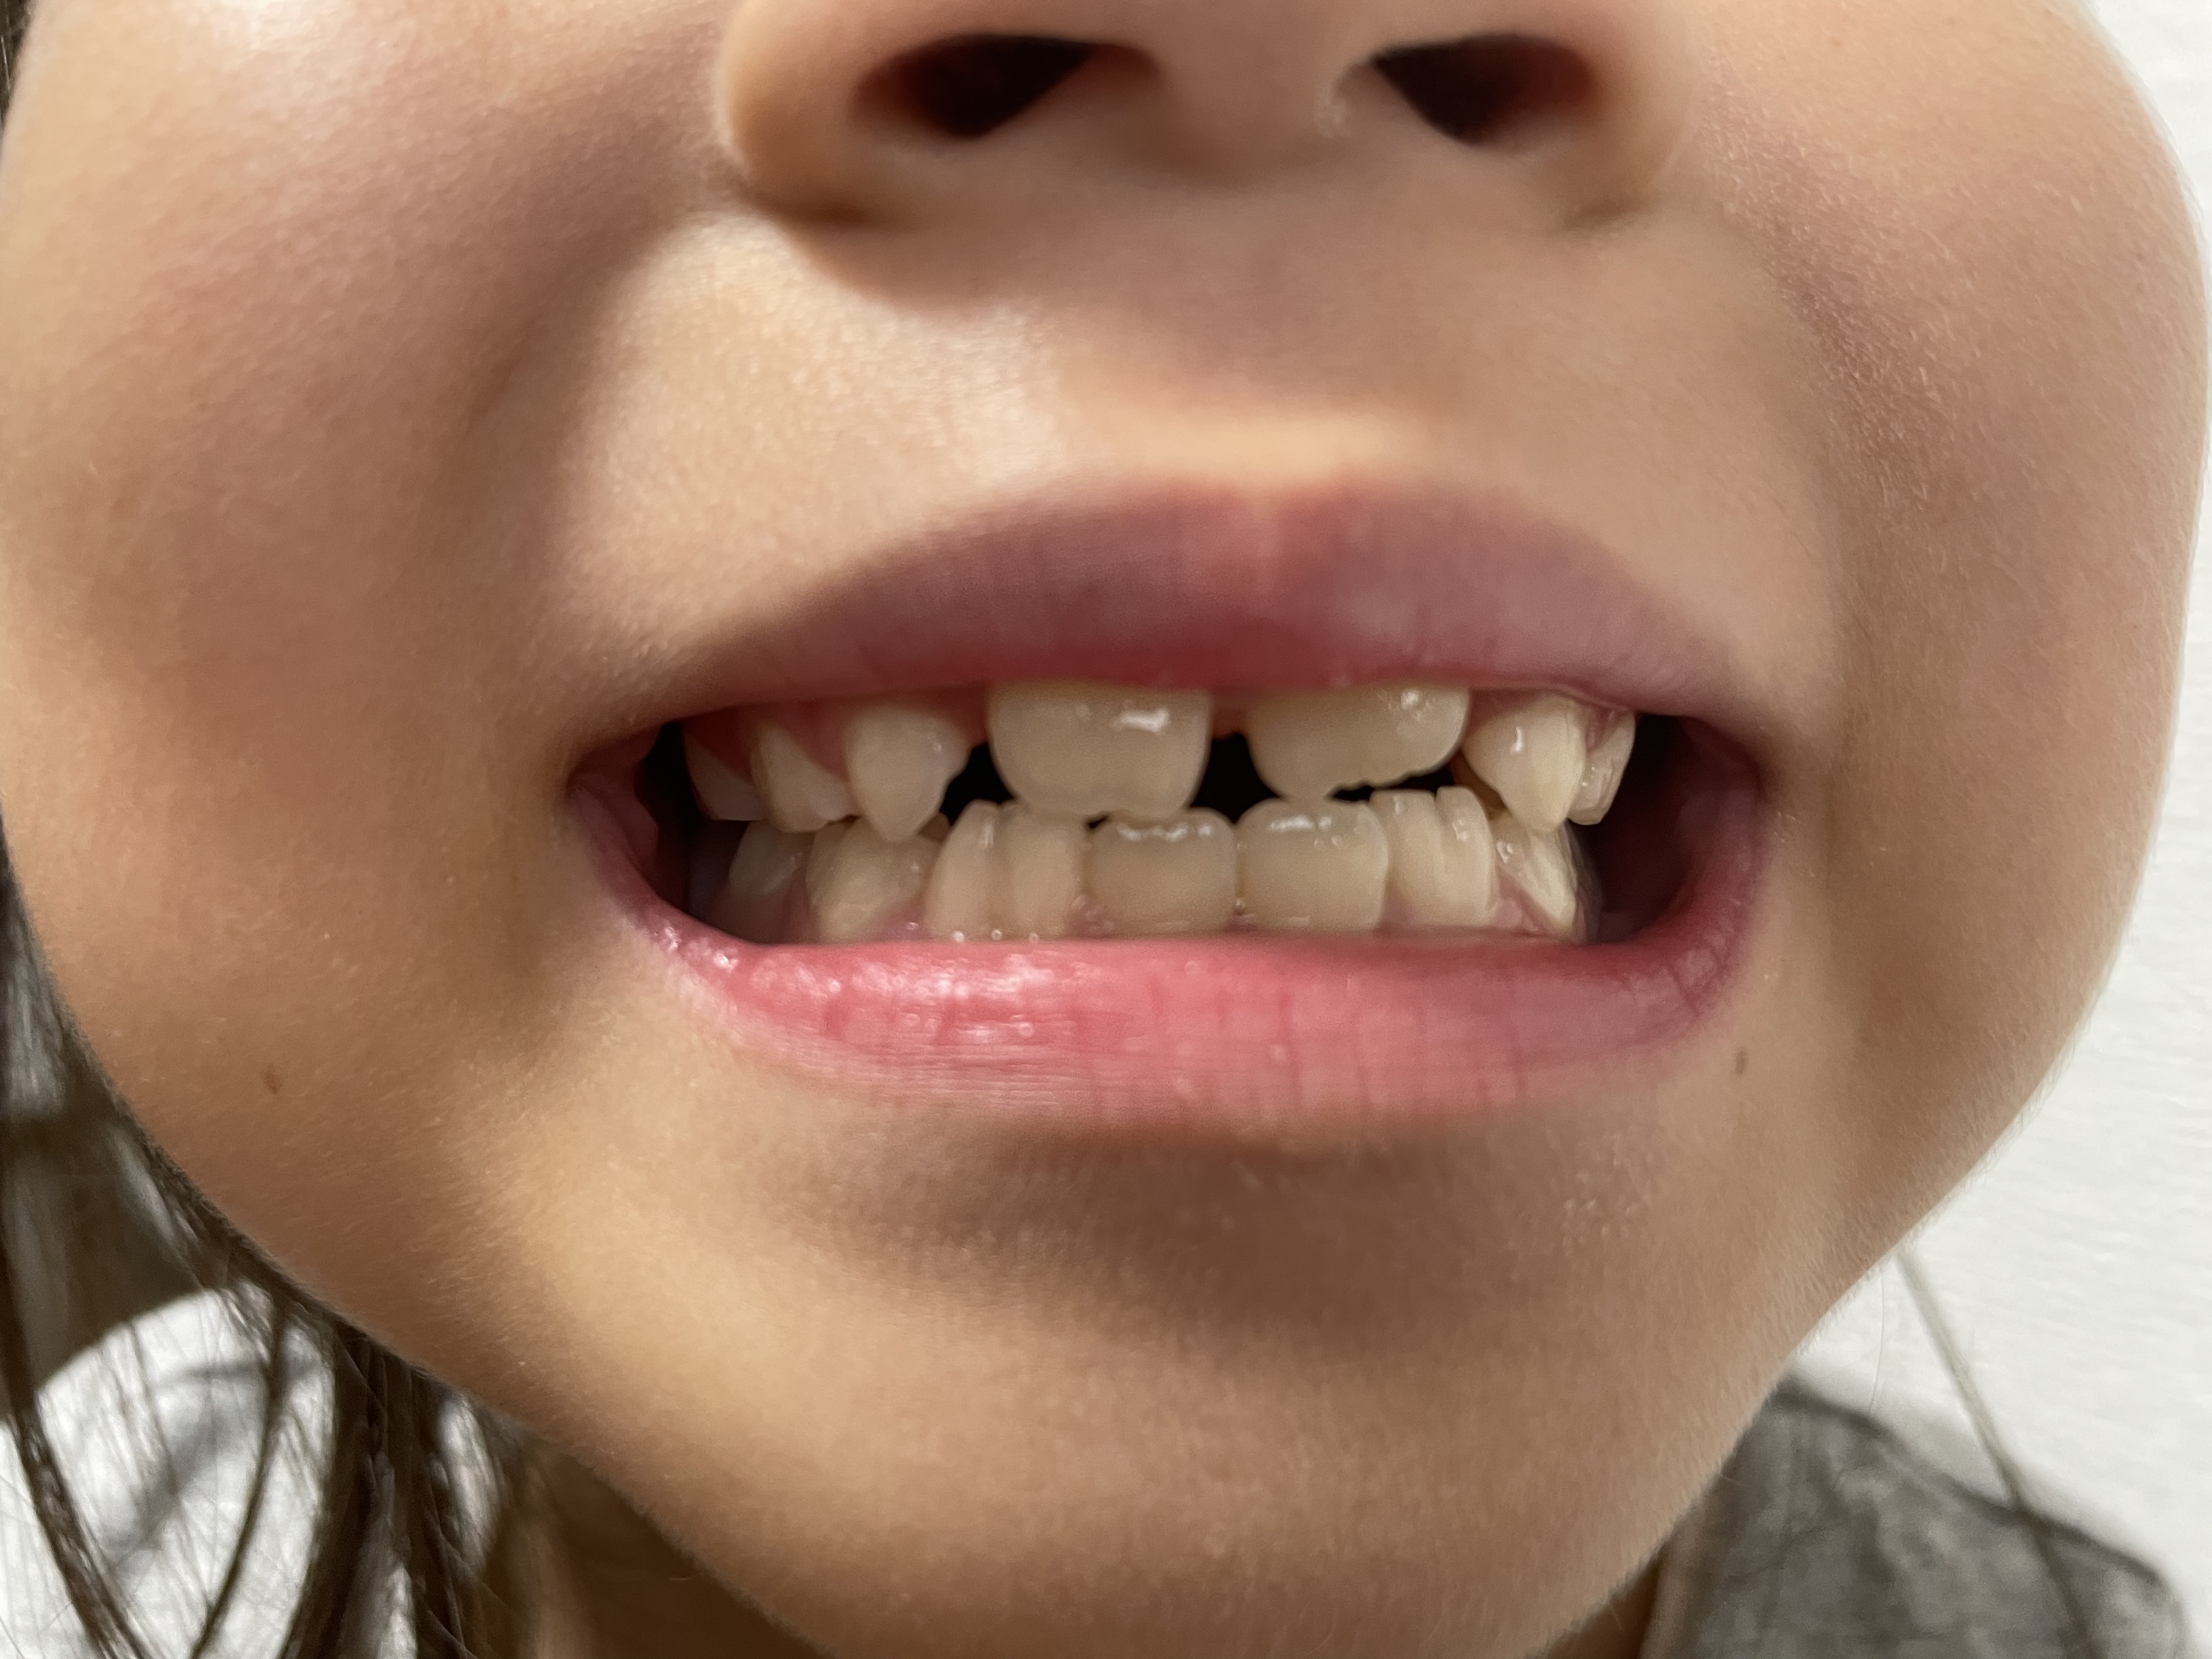 子どもの歯並びと舌の癖